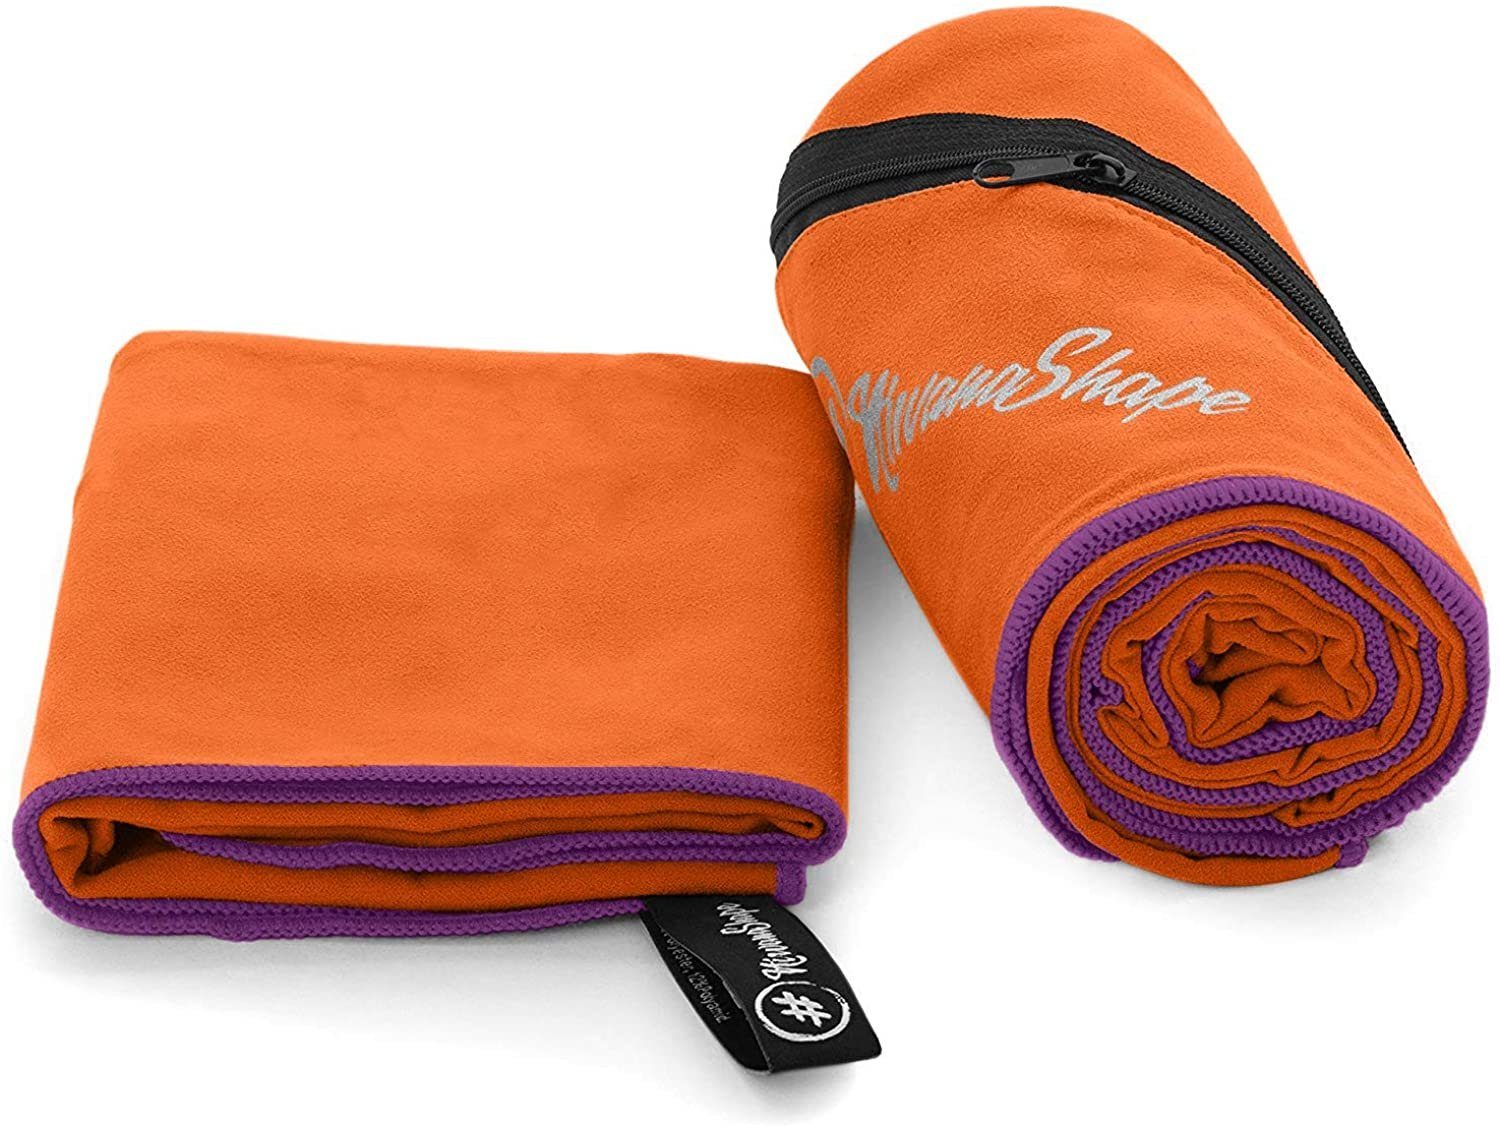 NirvanaShape Sporthandtuch Mikrofaser Handtuch, Badehandtuch, Reisehandtuch, Sporthandtuch, Ecktasche mit Reißverschluss, saugfähig, leicht, schnelltrocknend Orange / Violetter